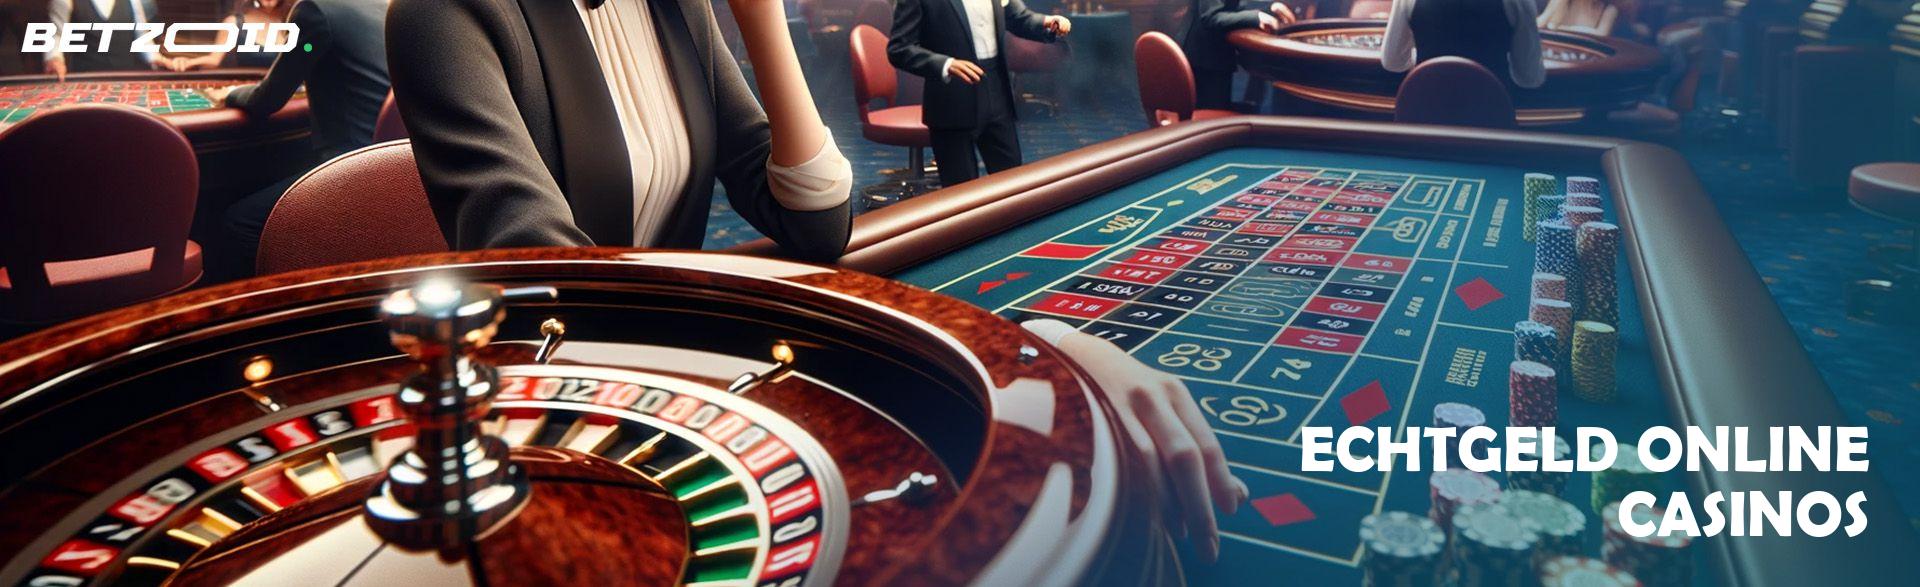 Echtgeld Online Casinos.